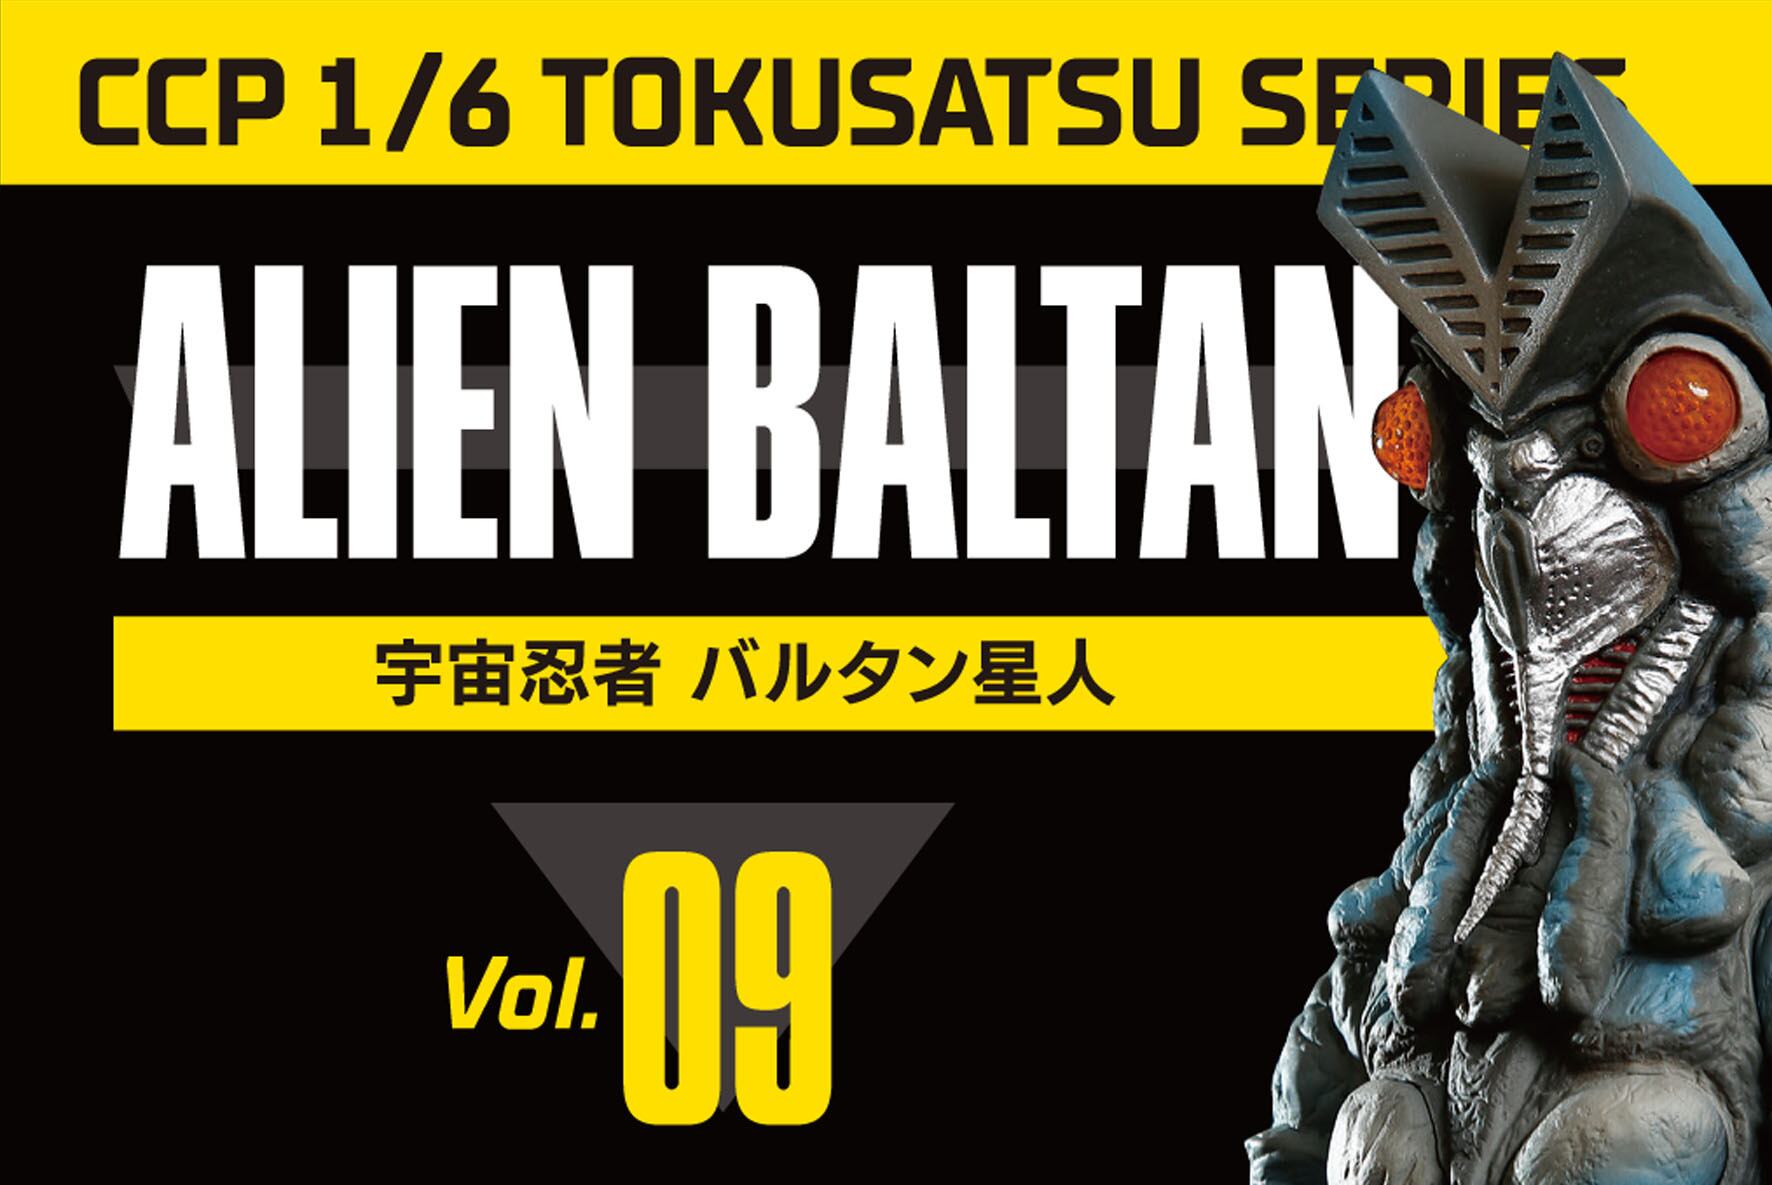 1/6特撮シリーズ Vol.9 バルタン星人 アドベント Ver. | CCPJAPAN